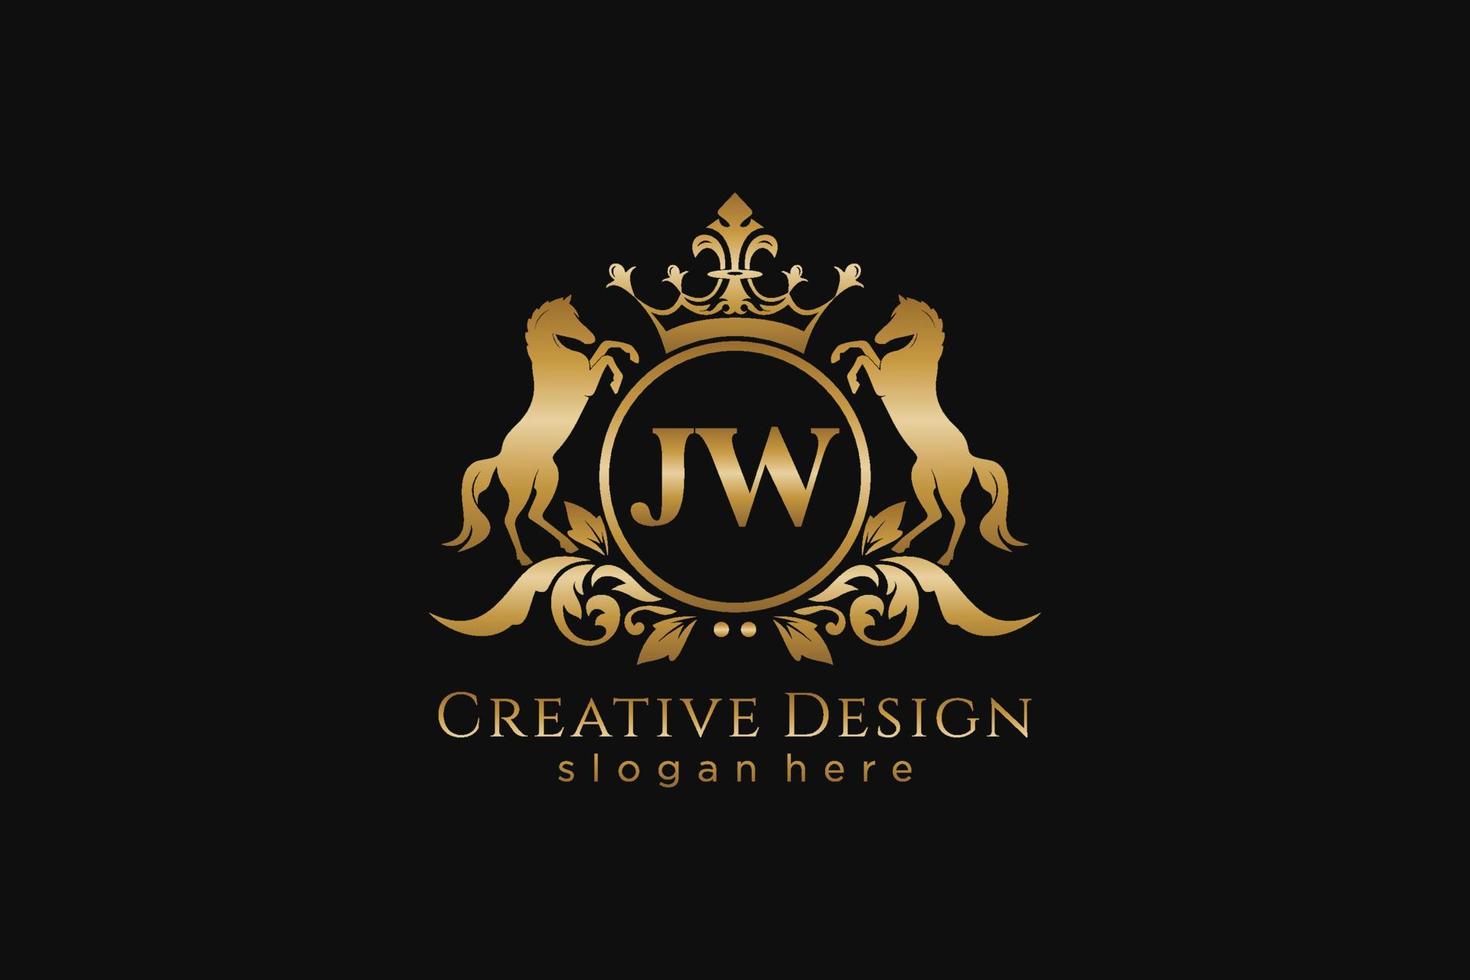 cresta dorada retro jw inicial con círculo y dos caballos, plantilla de insignia con pergaminos y corona real - perfecto para proyectos de marca de lujo vector